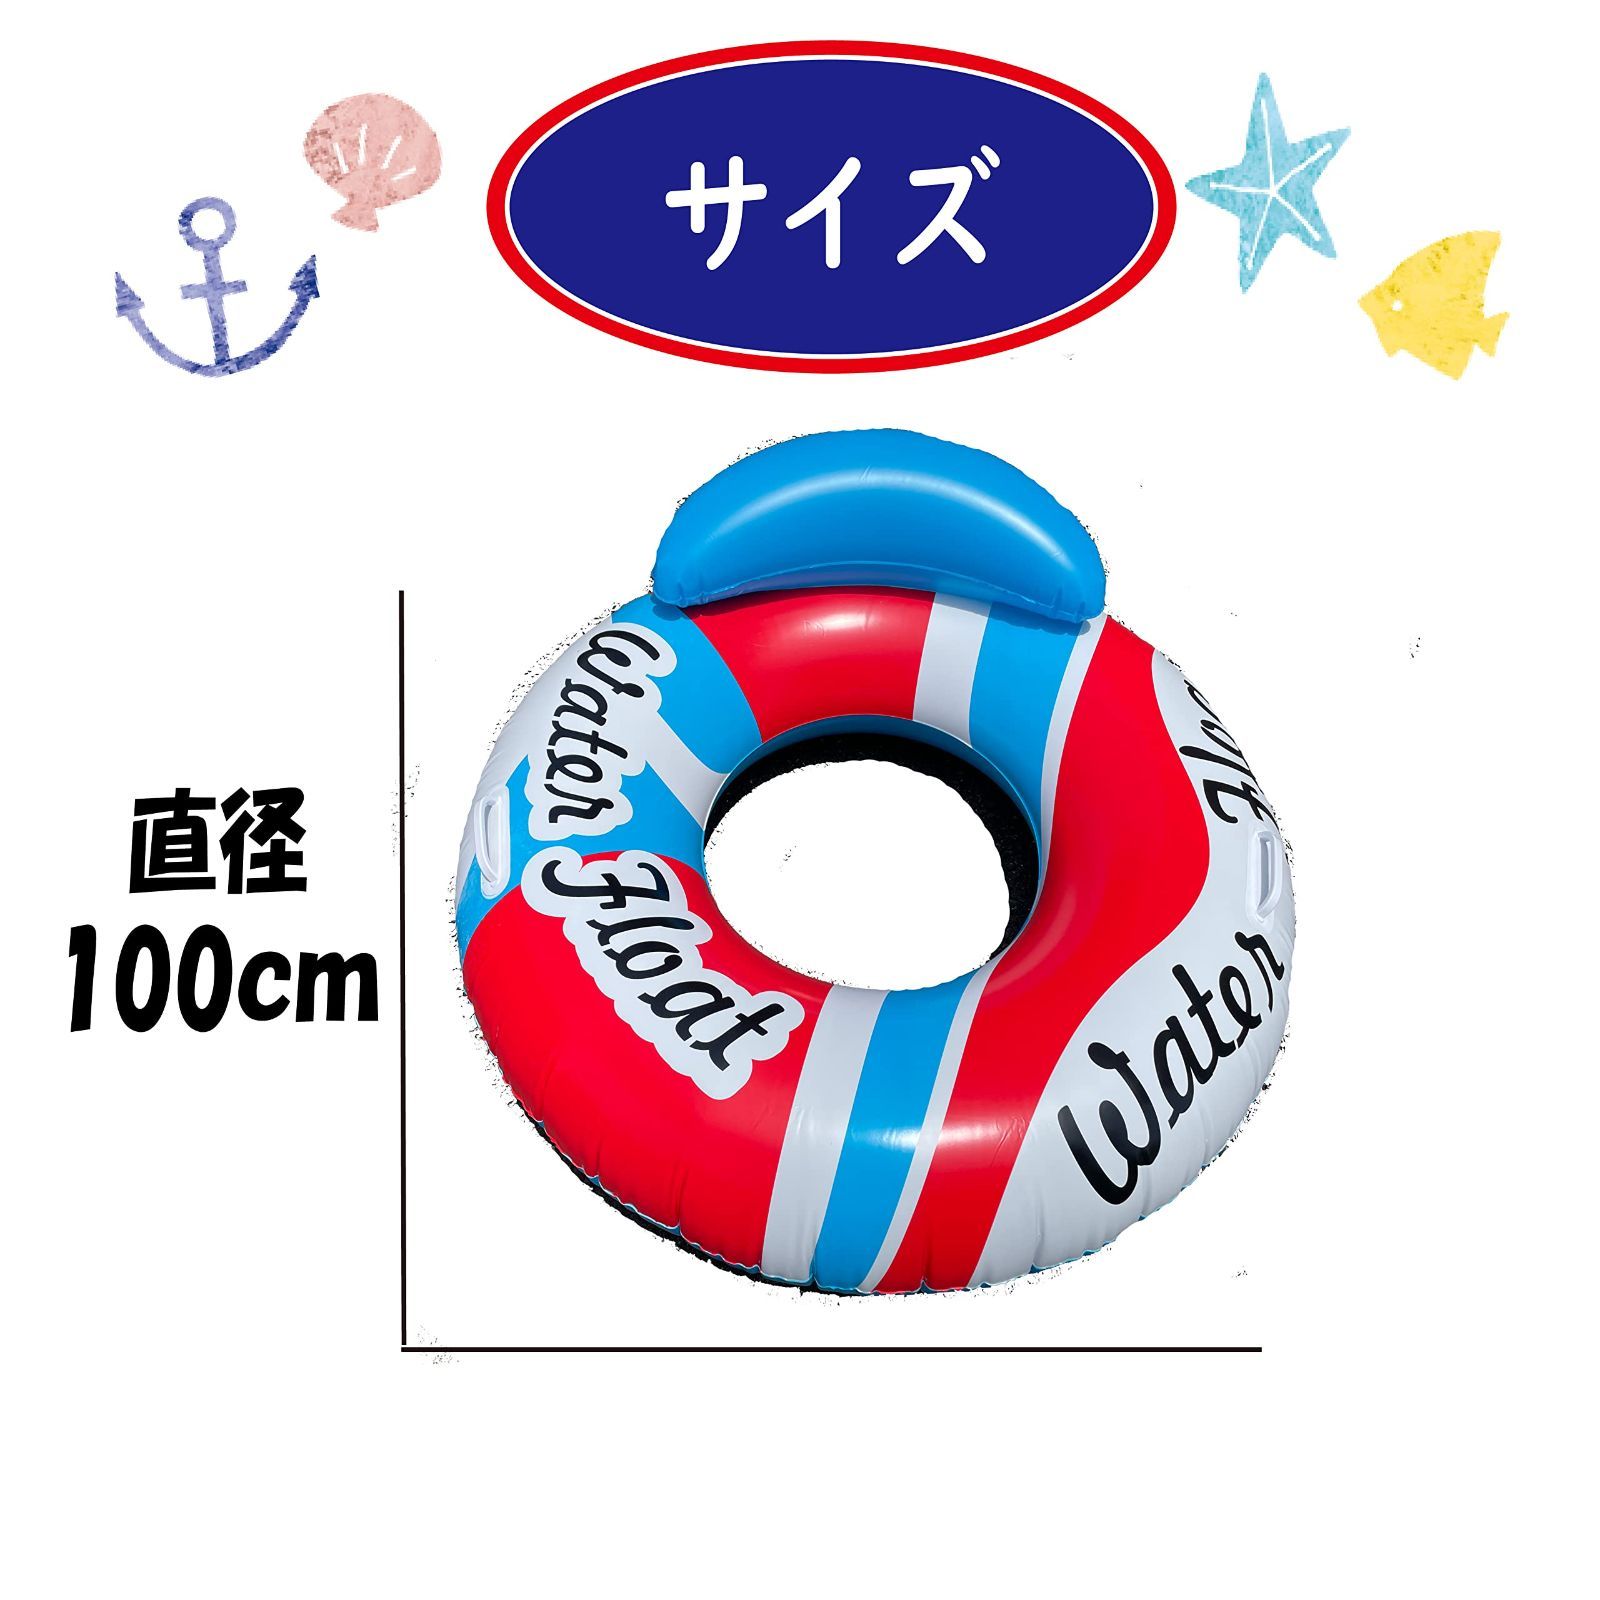 ジャングル ロコ JUNGLE ROCO 浮き輪 100cm lgmontaggi.com